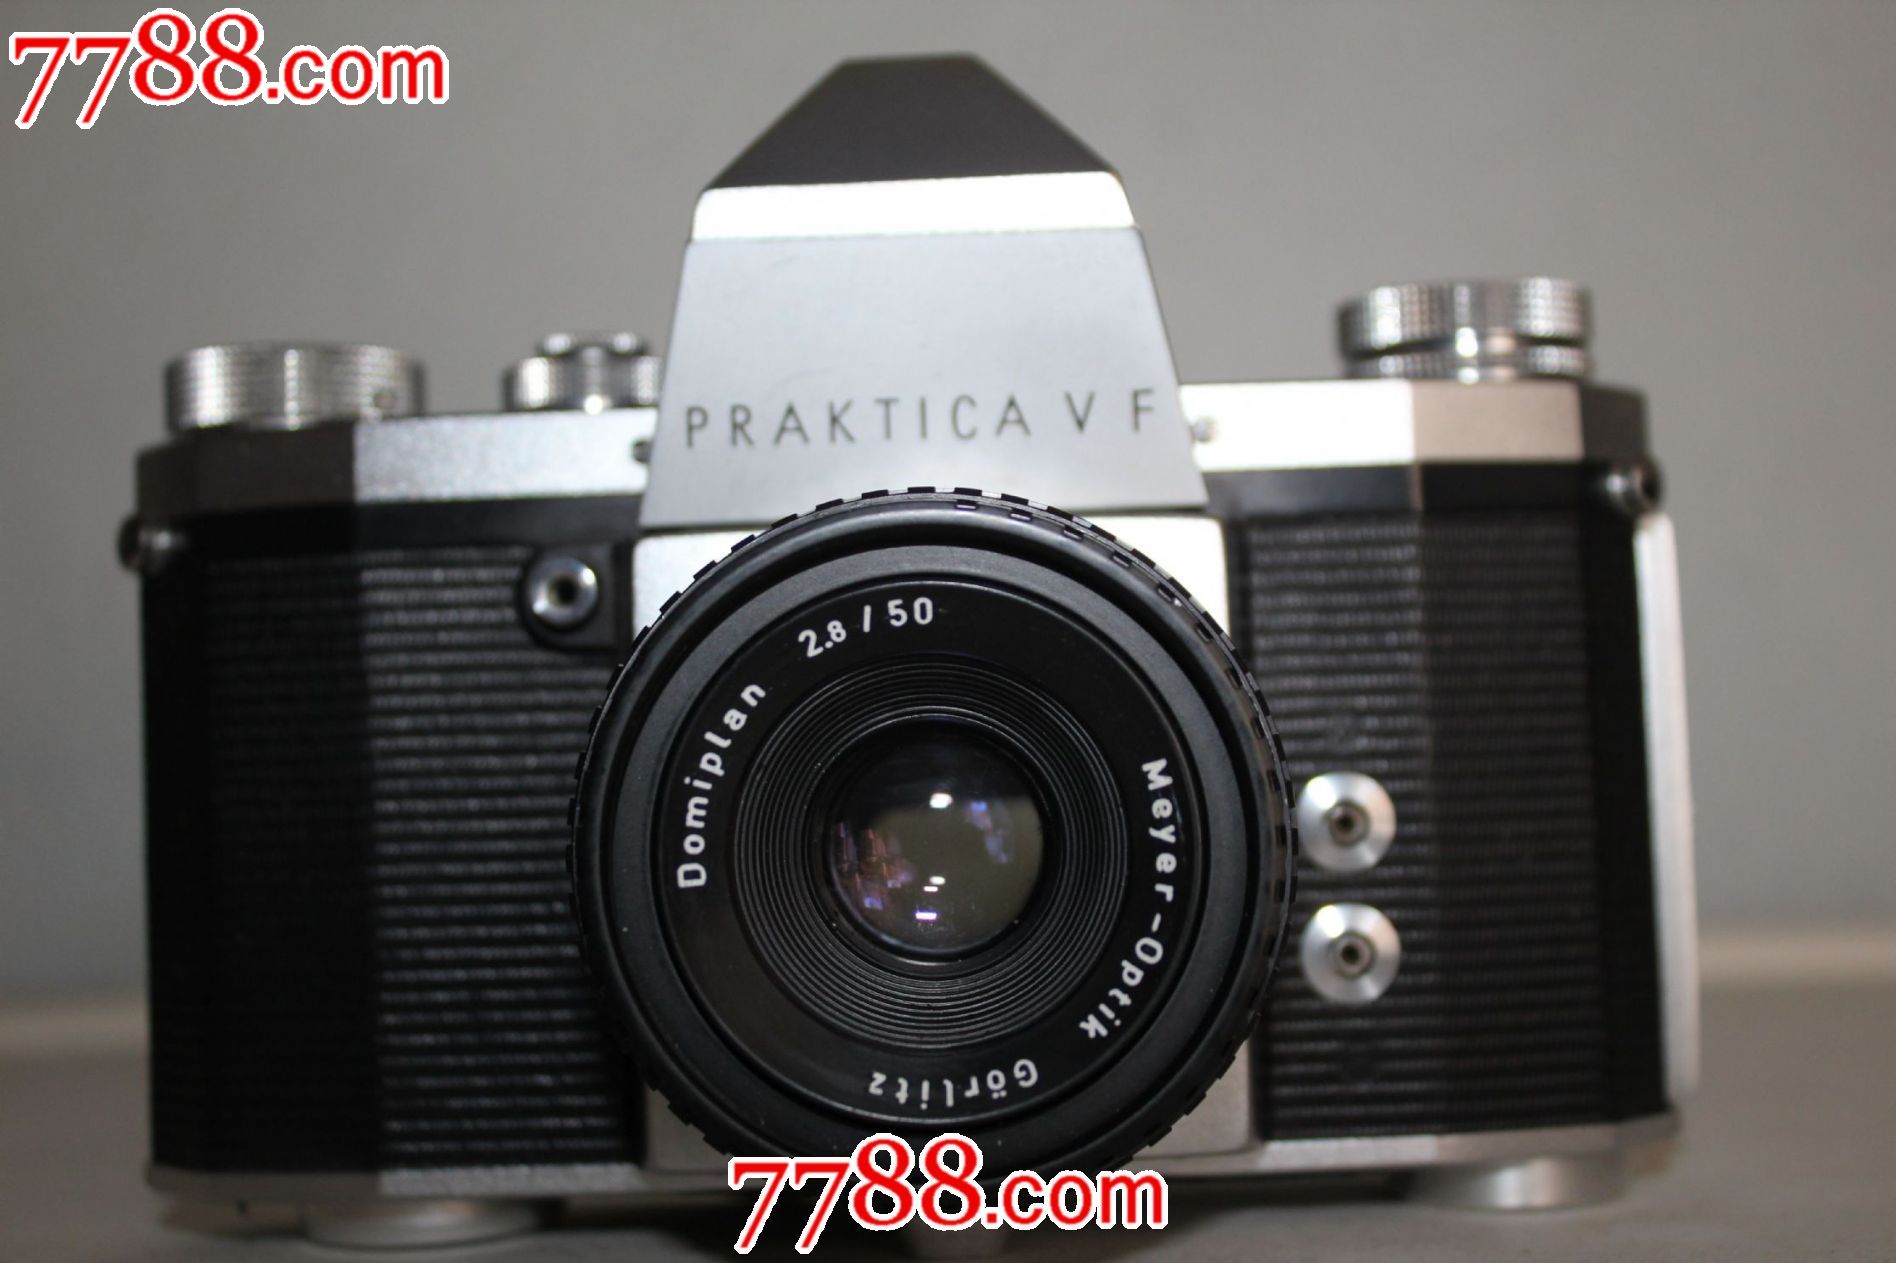 德国PRAKTICAVF单反相机-价格:700元-se178